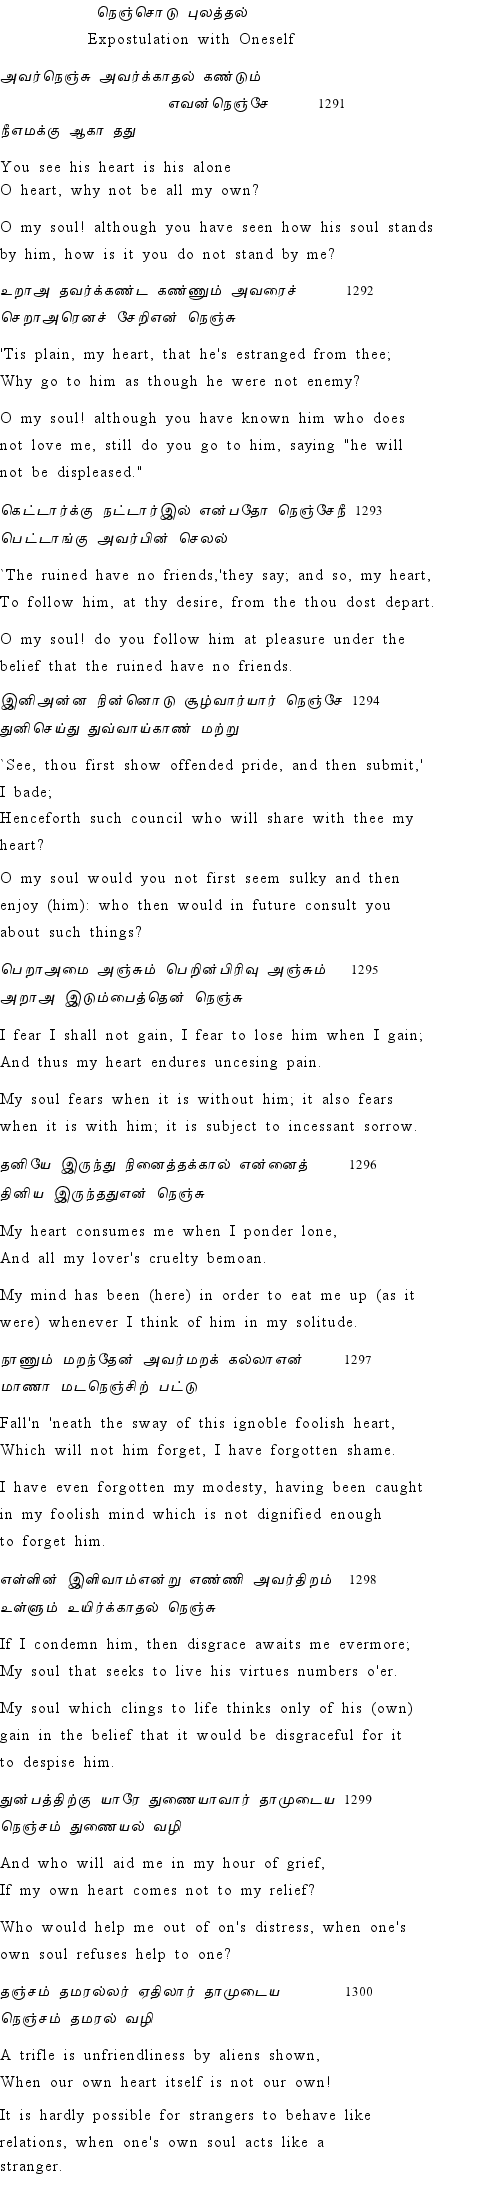 Text of Adhikaram 130